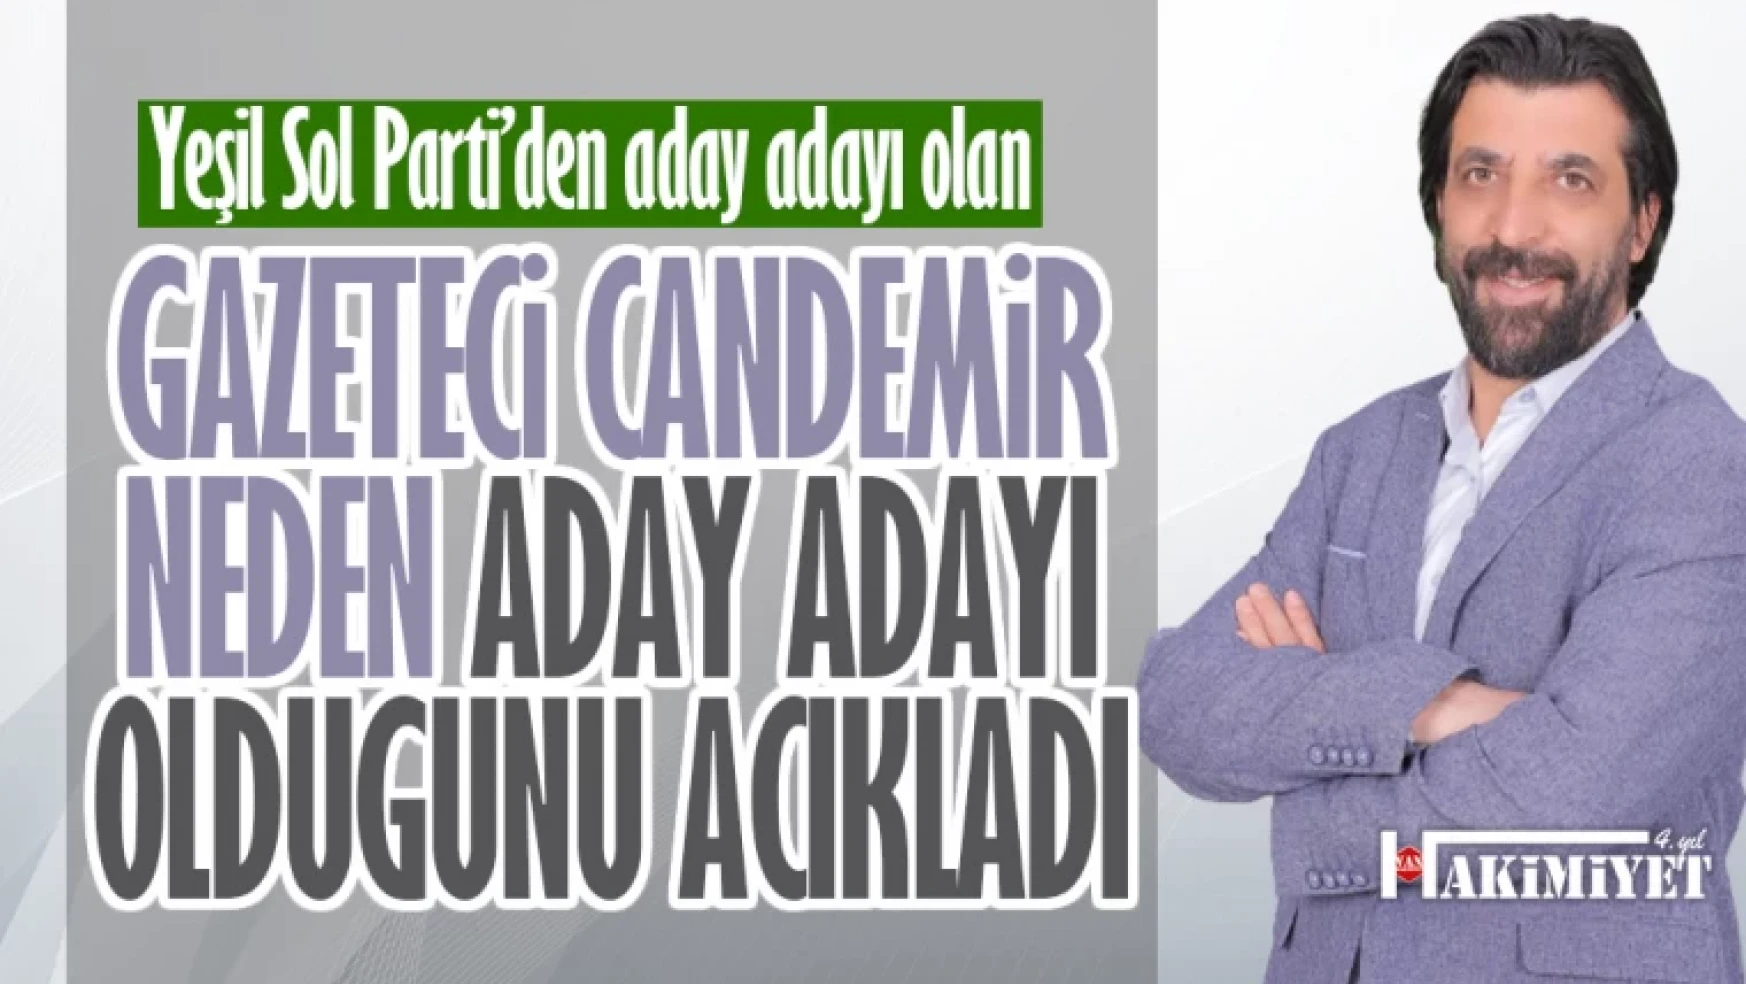 Gazeteci Oktay Candemir neden aday adayı olduğunu açıkladı